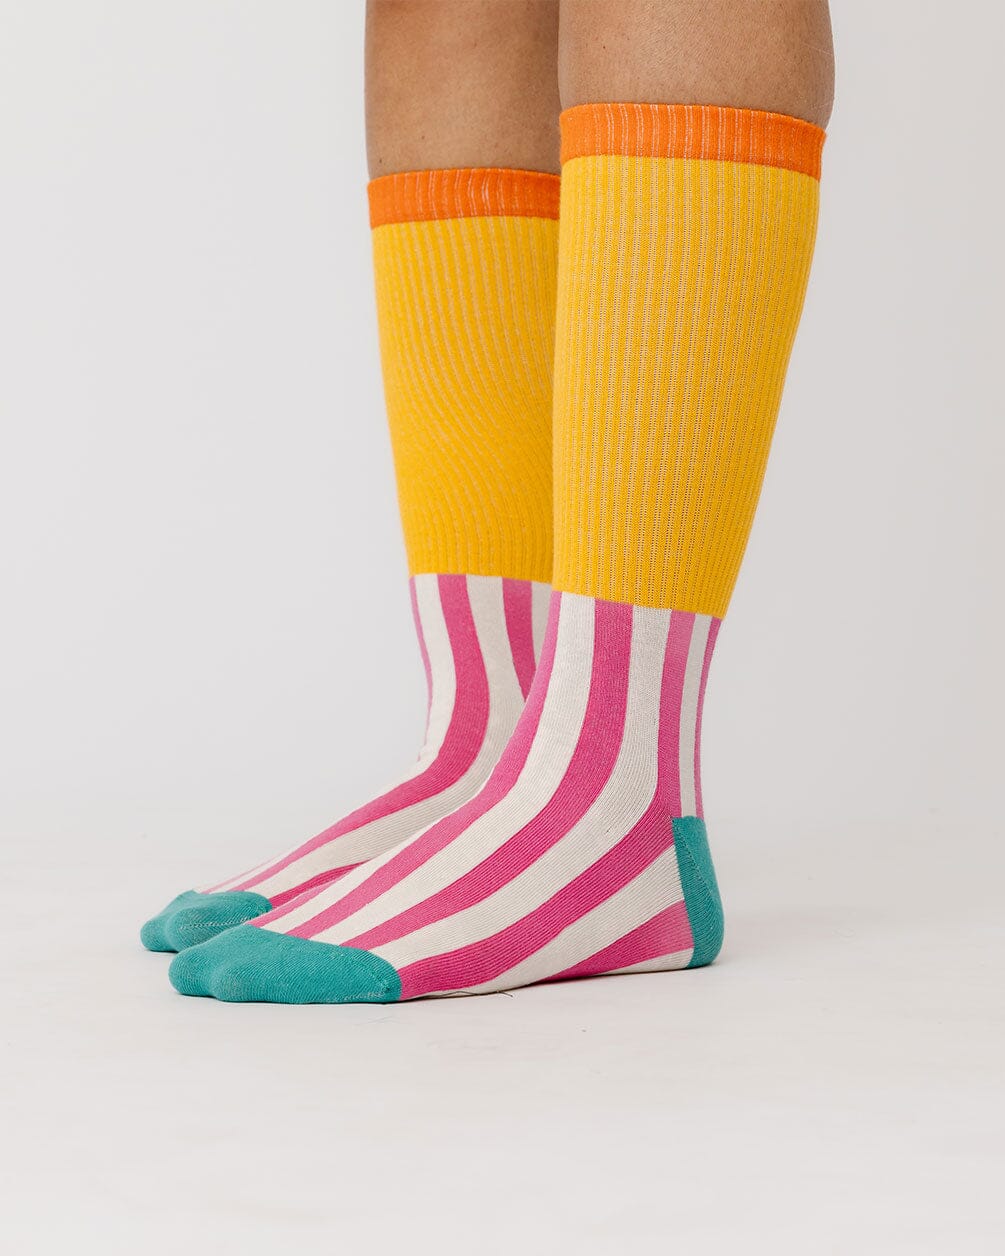 Carnival Neck Socks Neck Socks In Your Shoe 